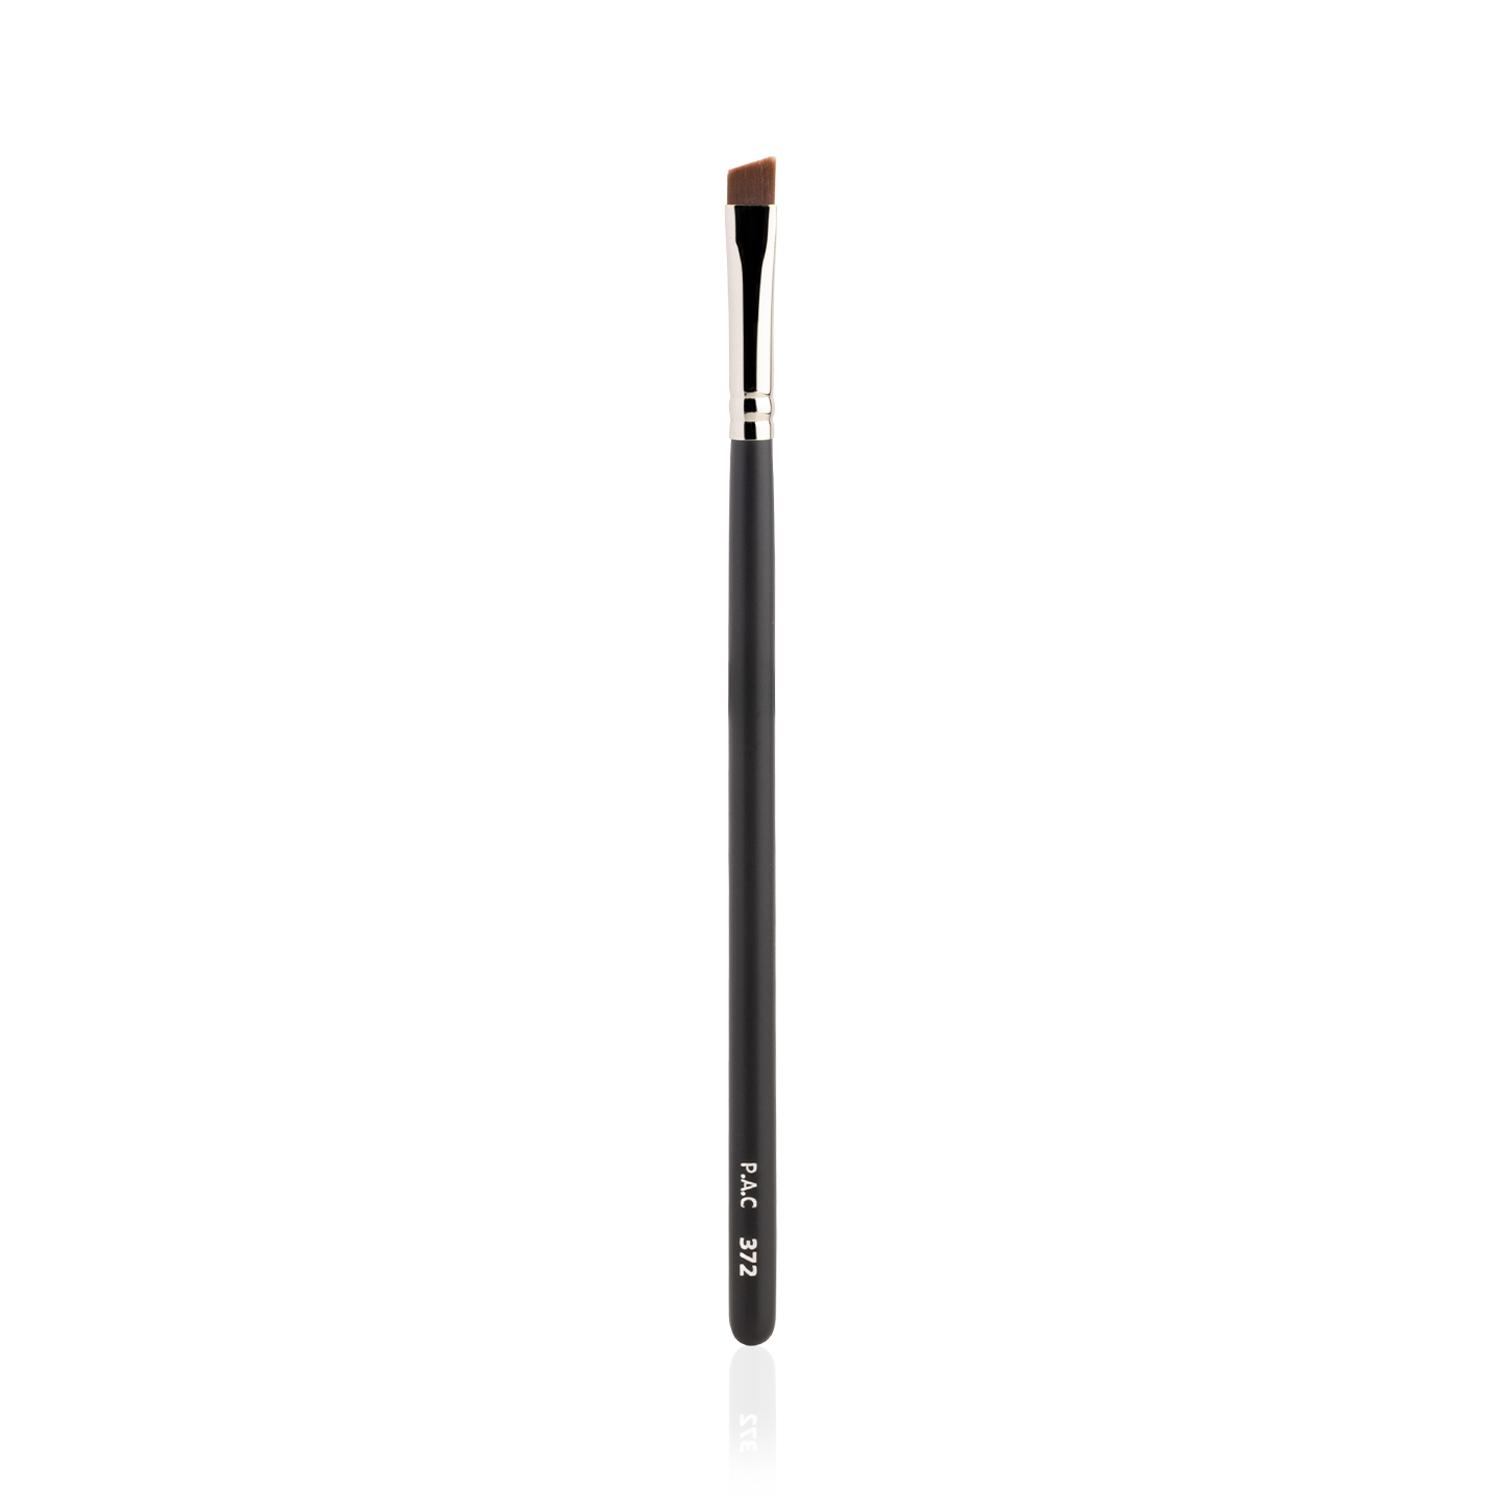 PAC | PAC Eyeliner Brush - 372 (1Pc)